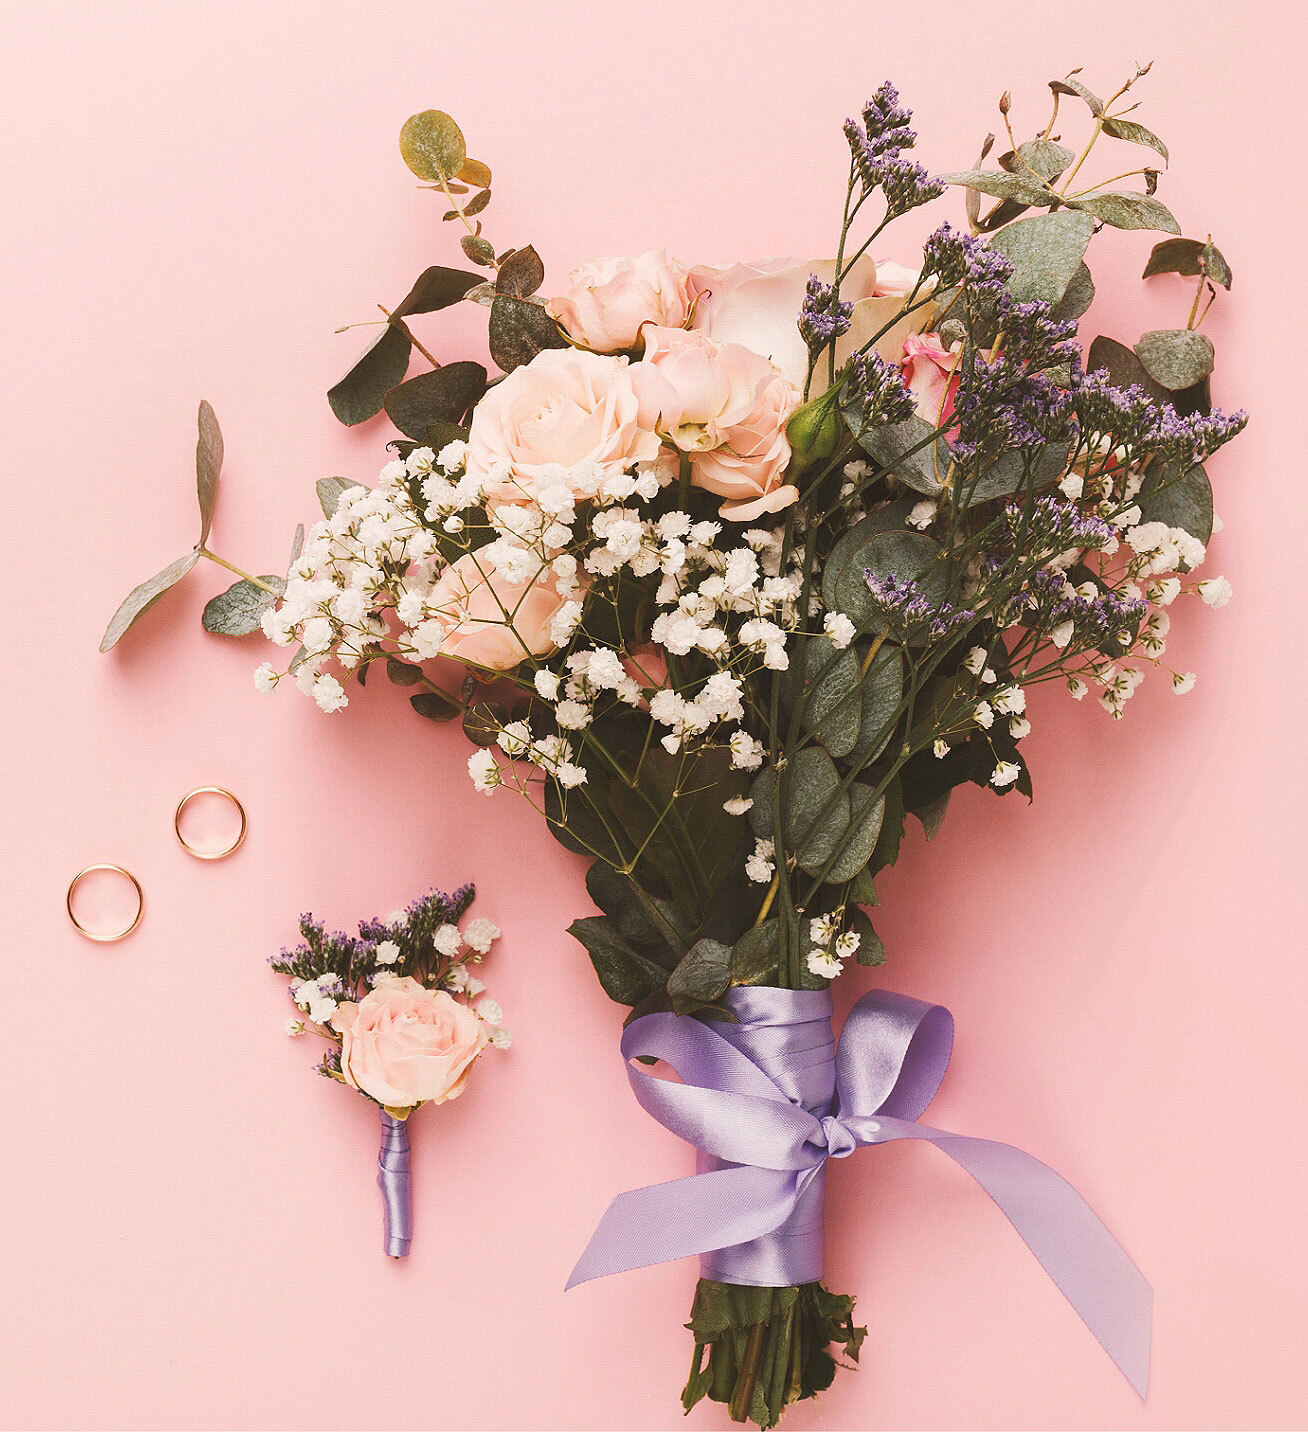 Blumen-Risse, Sortiment, Blumen, Floristik, Hochzeit, Blumenstrauss, Rosa, Lila, Gruen